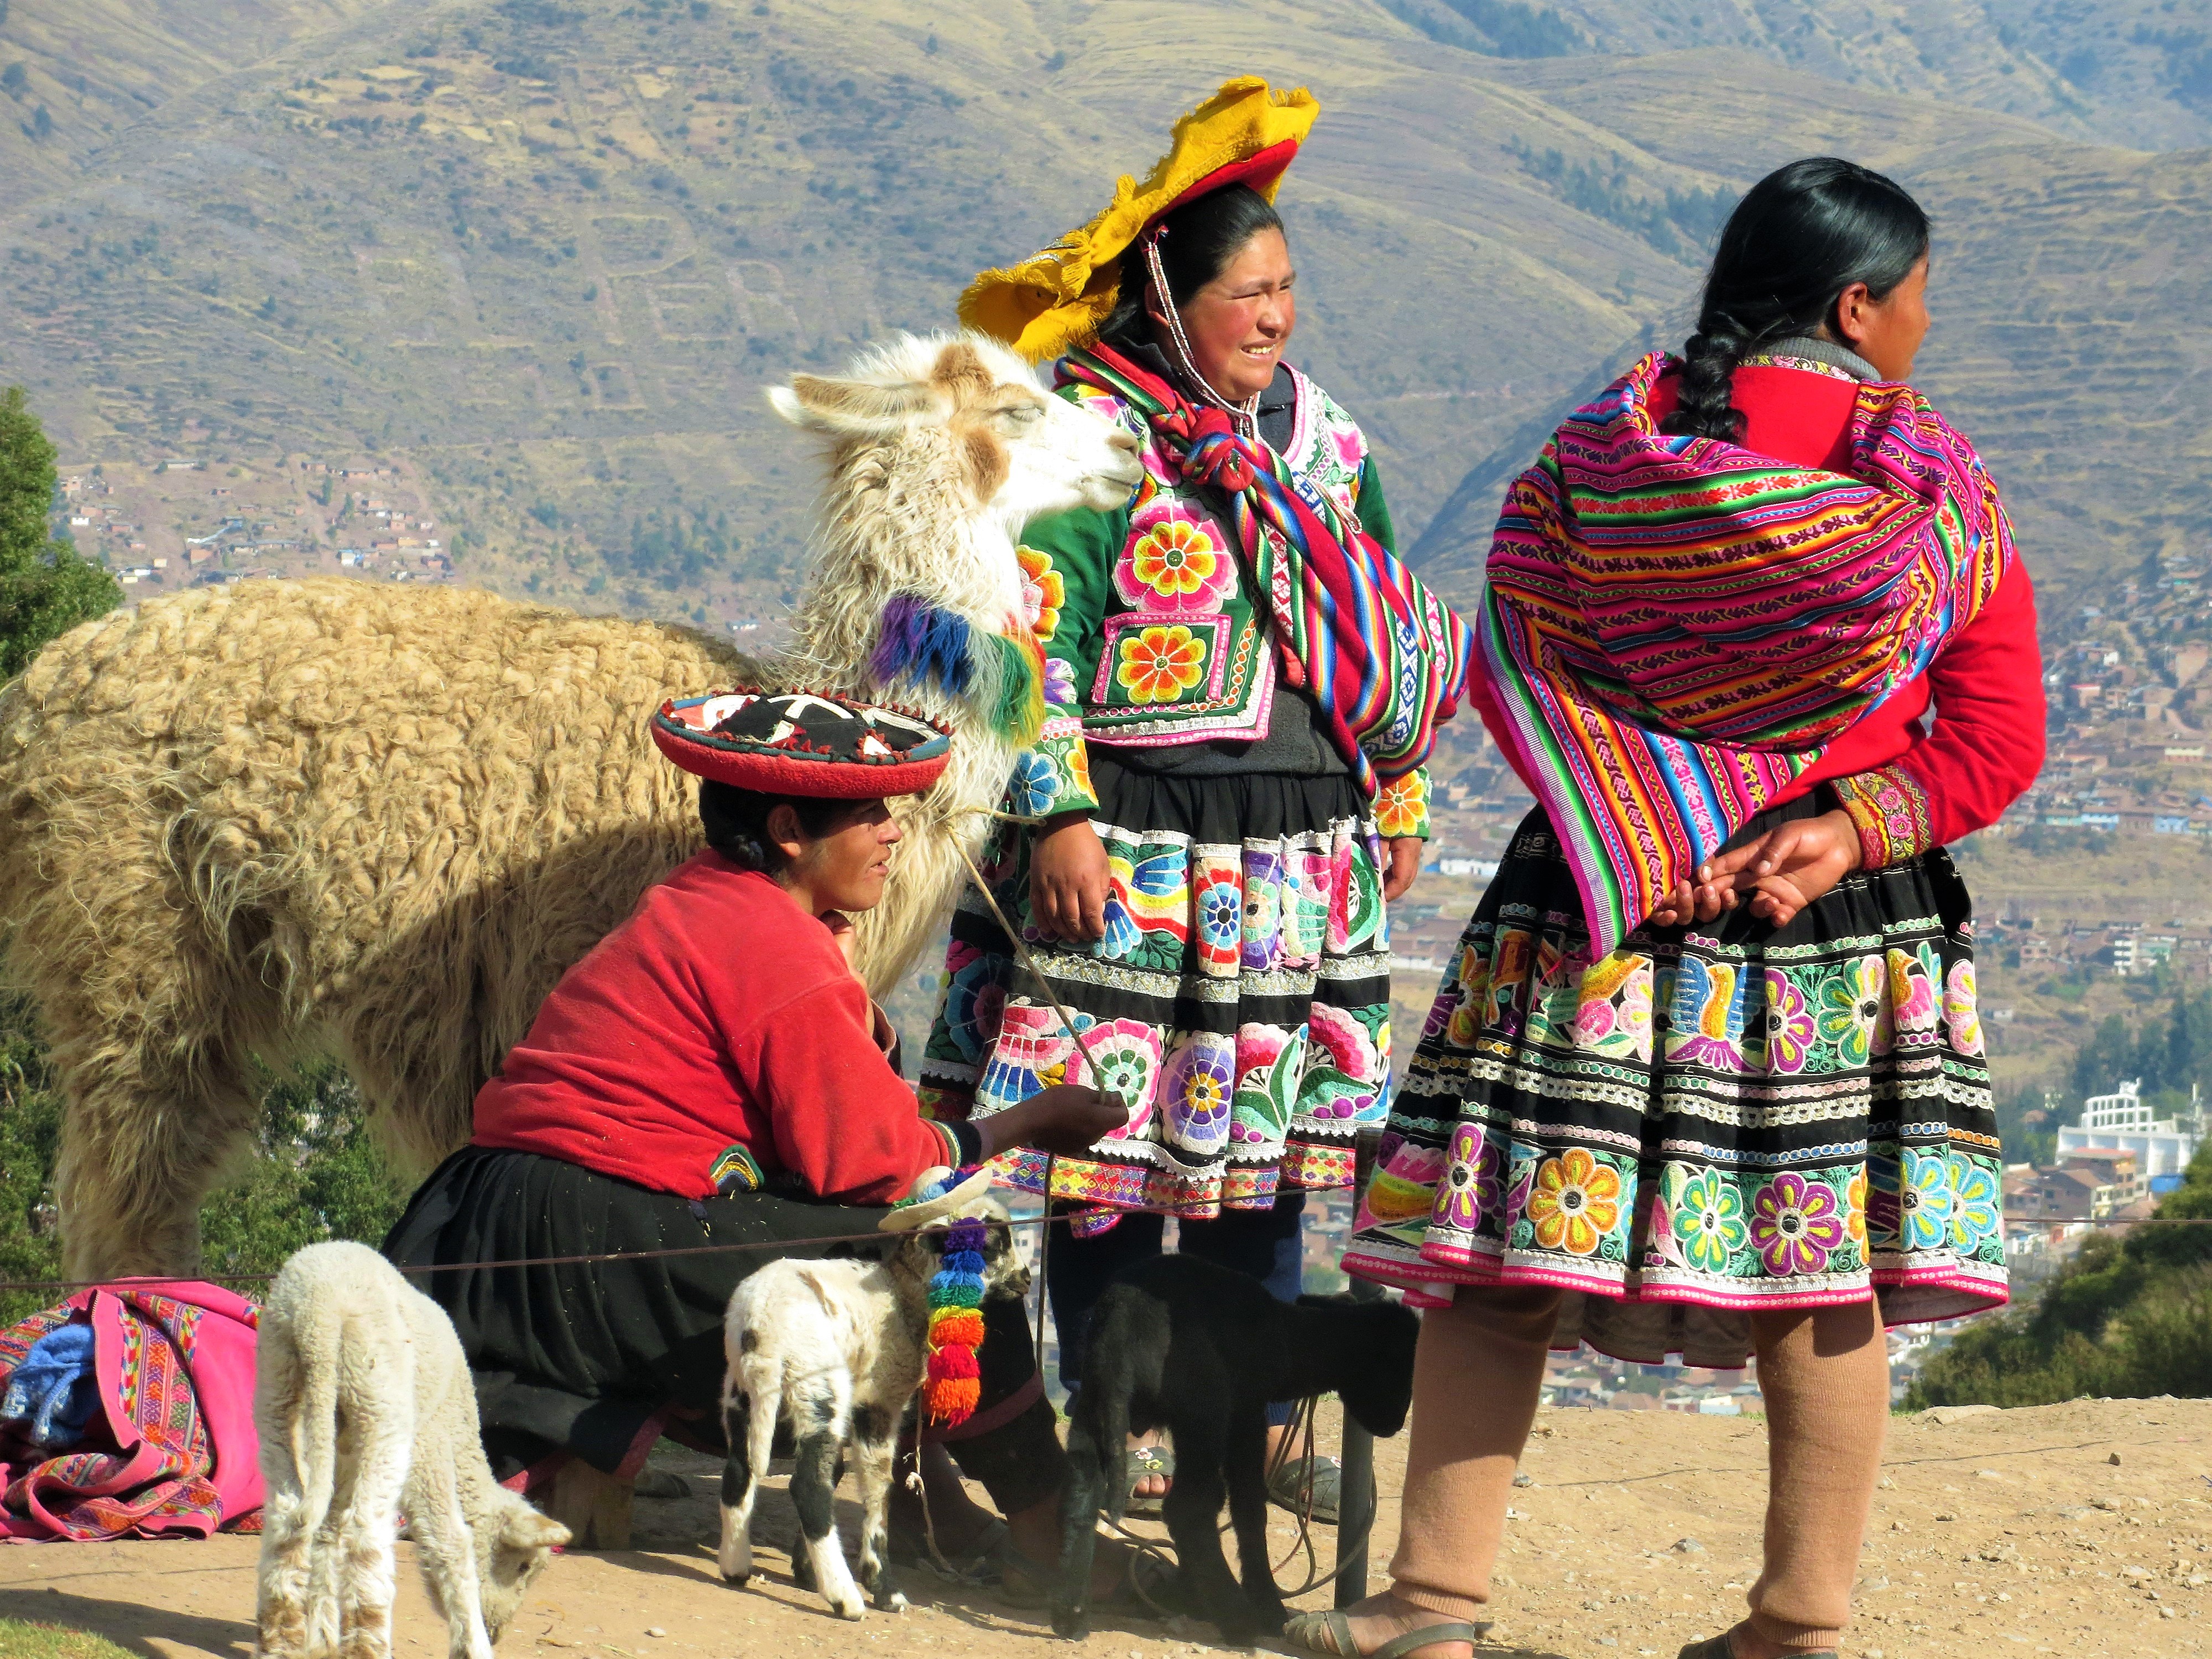 Potomkowie Inków nadal chodzą drogami wybudowanymi przez ich pradziadów